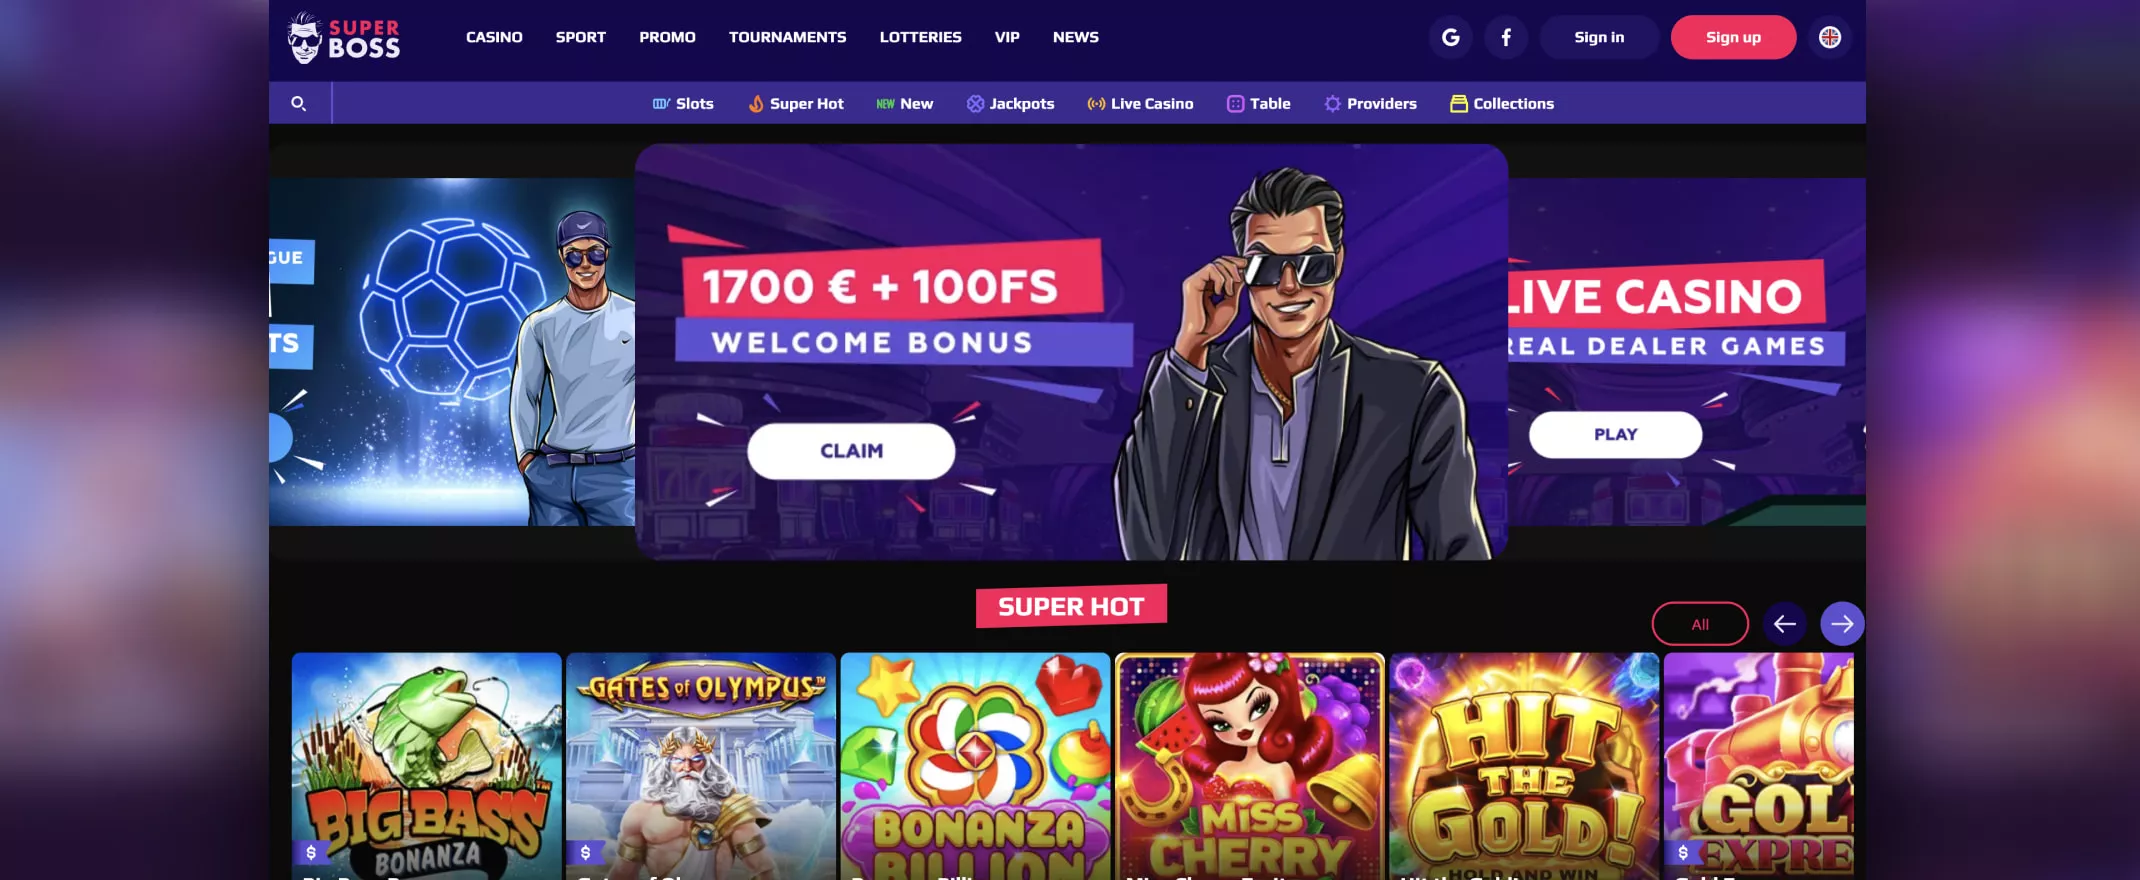 SuperBoss Casino screenshot of the homepage